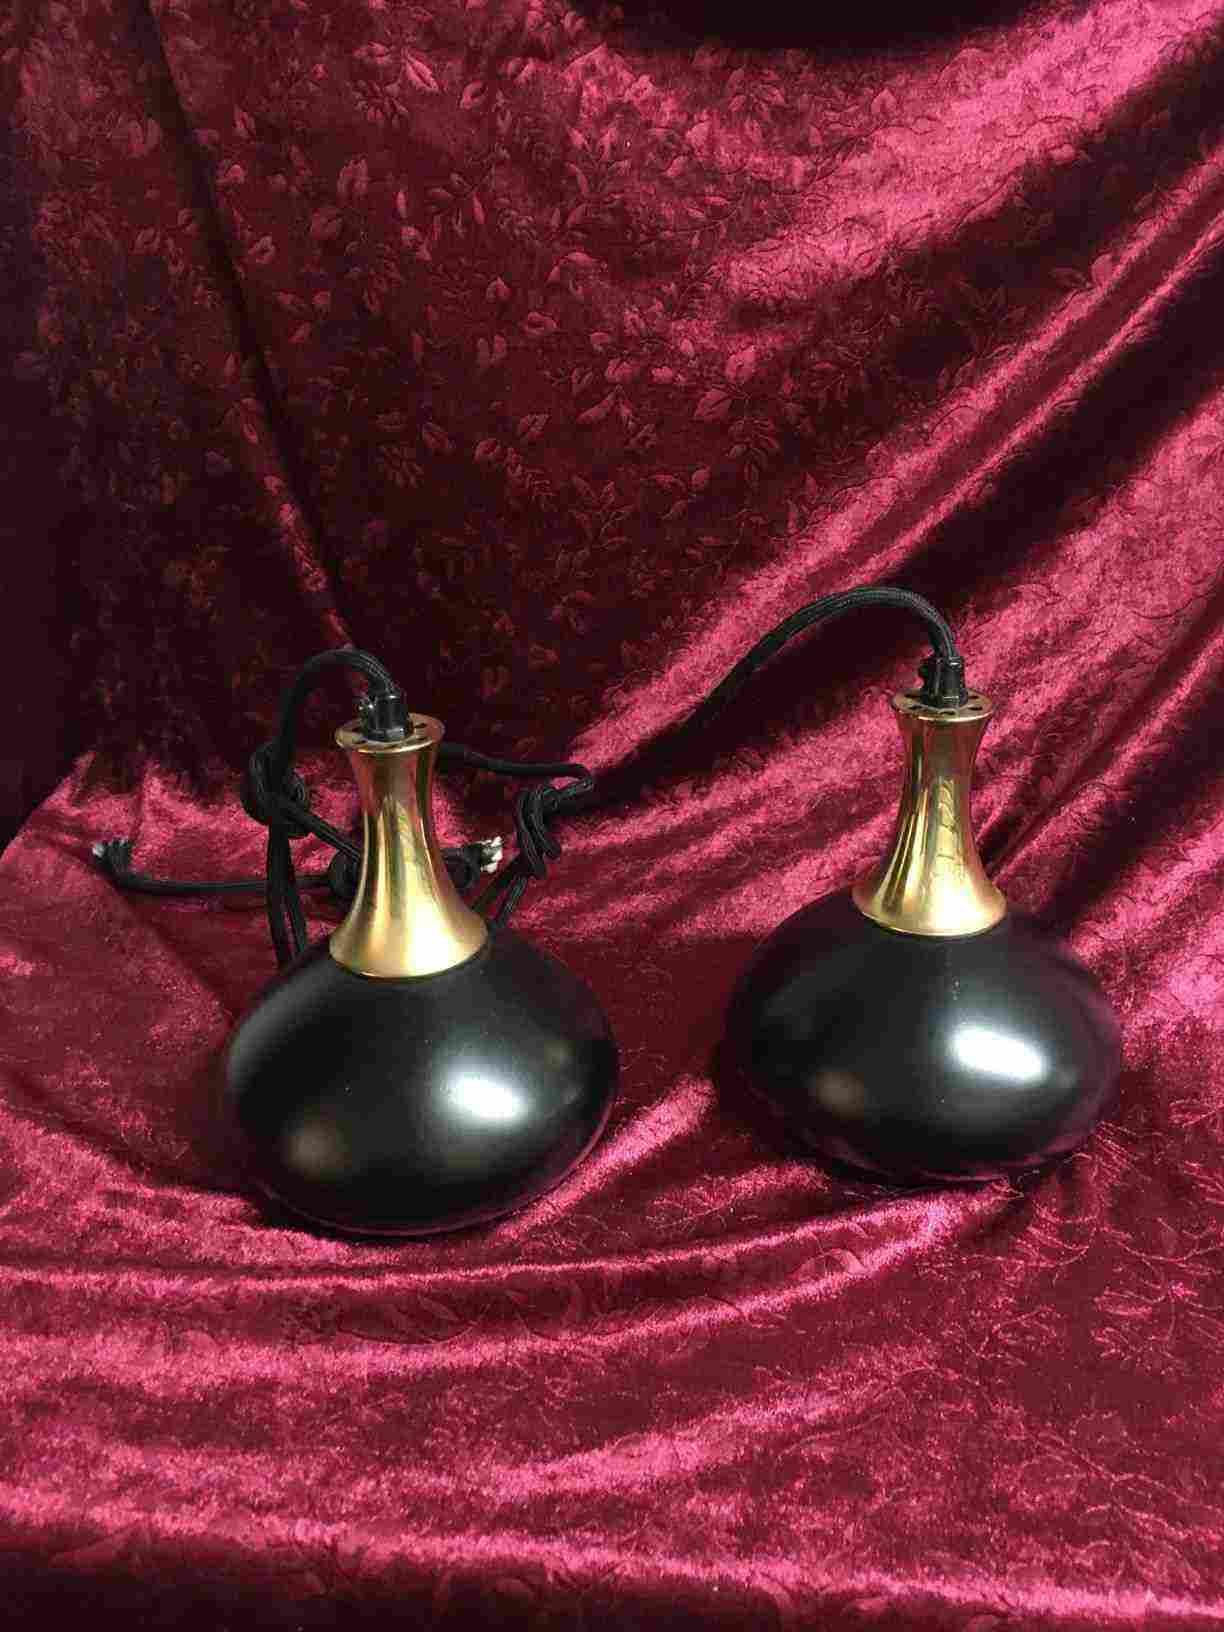 Scandi Lamp har produceret disse smukke pendler i messing og sort lakeret metal. De giver et blødt behageligt lys, som giver en hyggelig let romantisk atmosfære. Lette brugsspor. Solgt